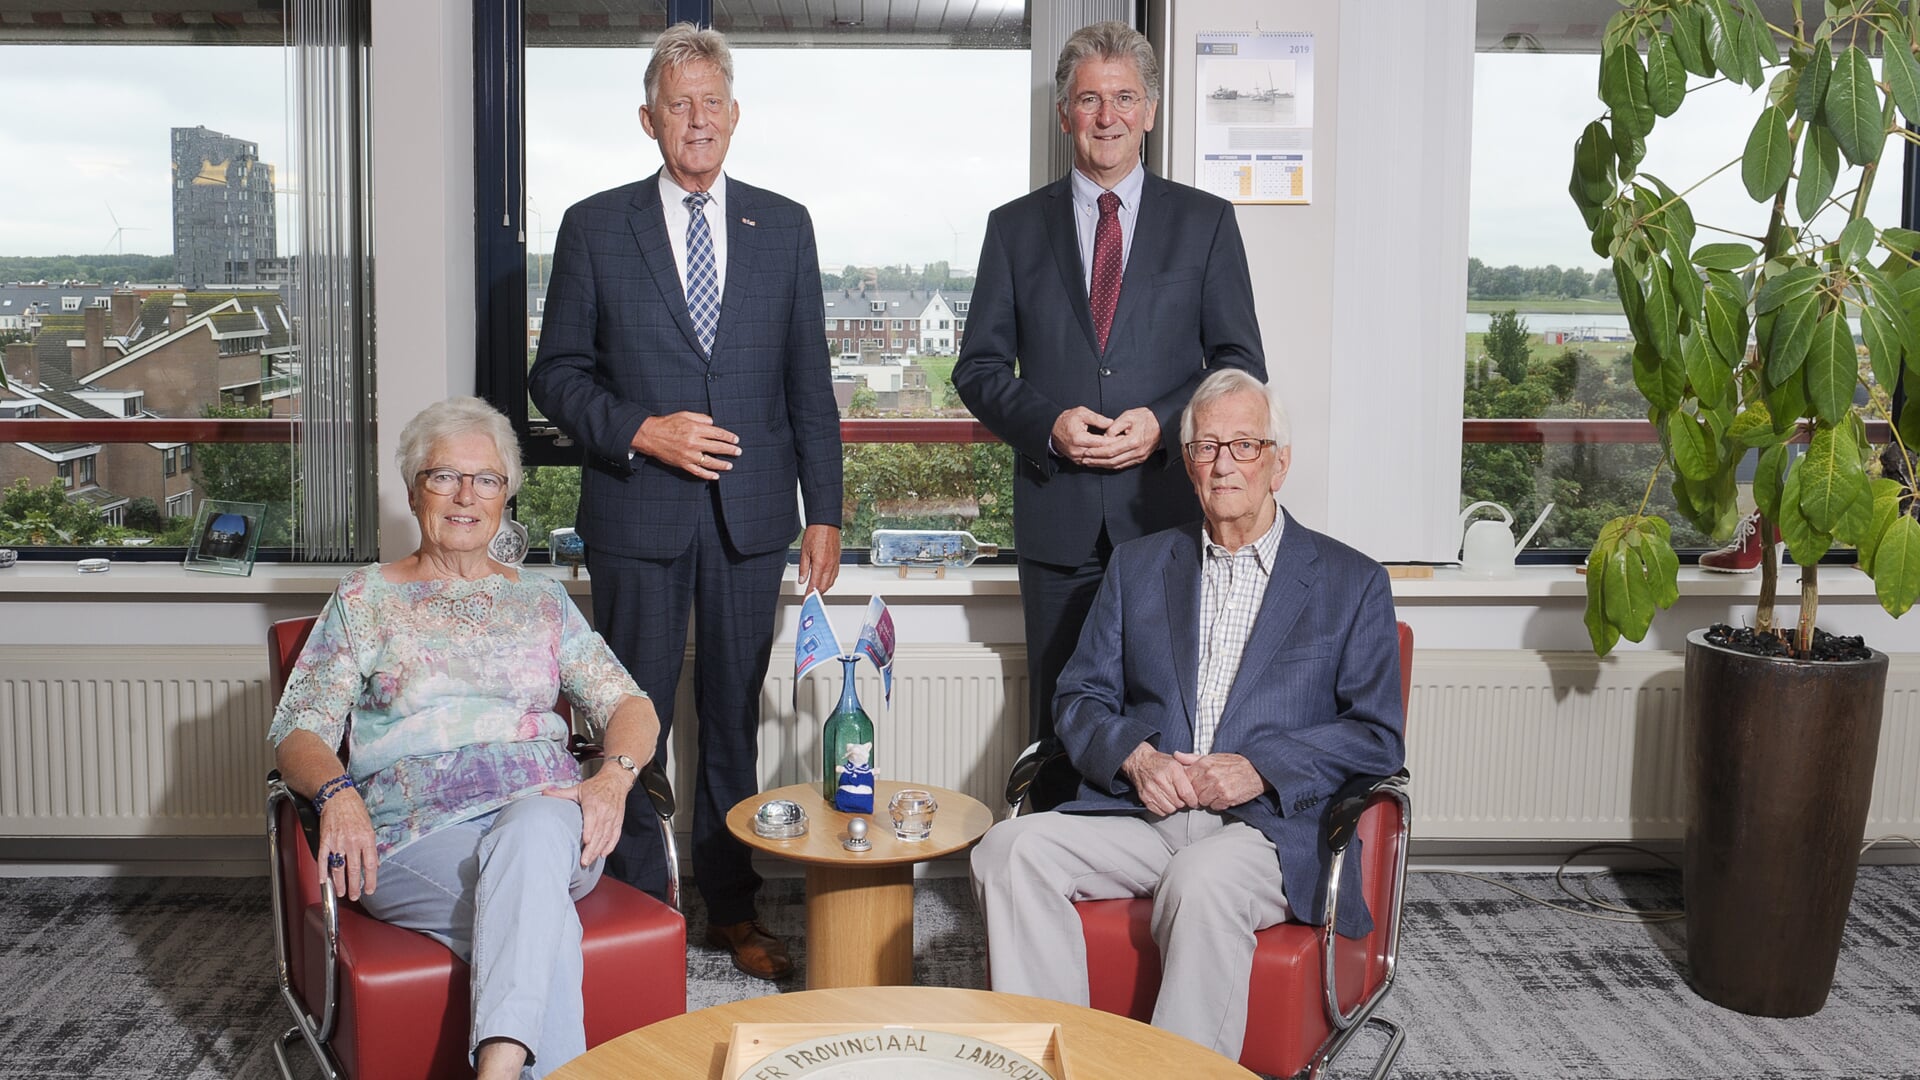 Vier oud-burgemeesters van Maassluis; Hans van Es, Jannie Sterkenburg-Versluis, Koos Karssen en Edo Haan.